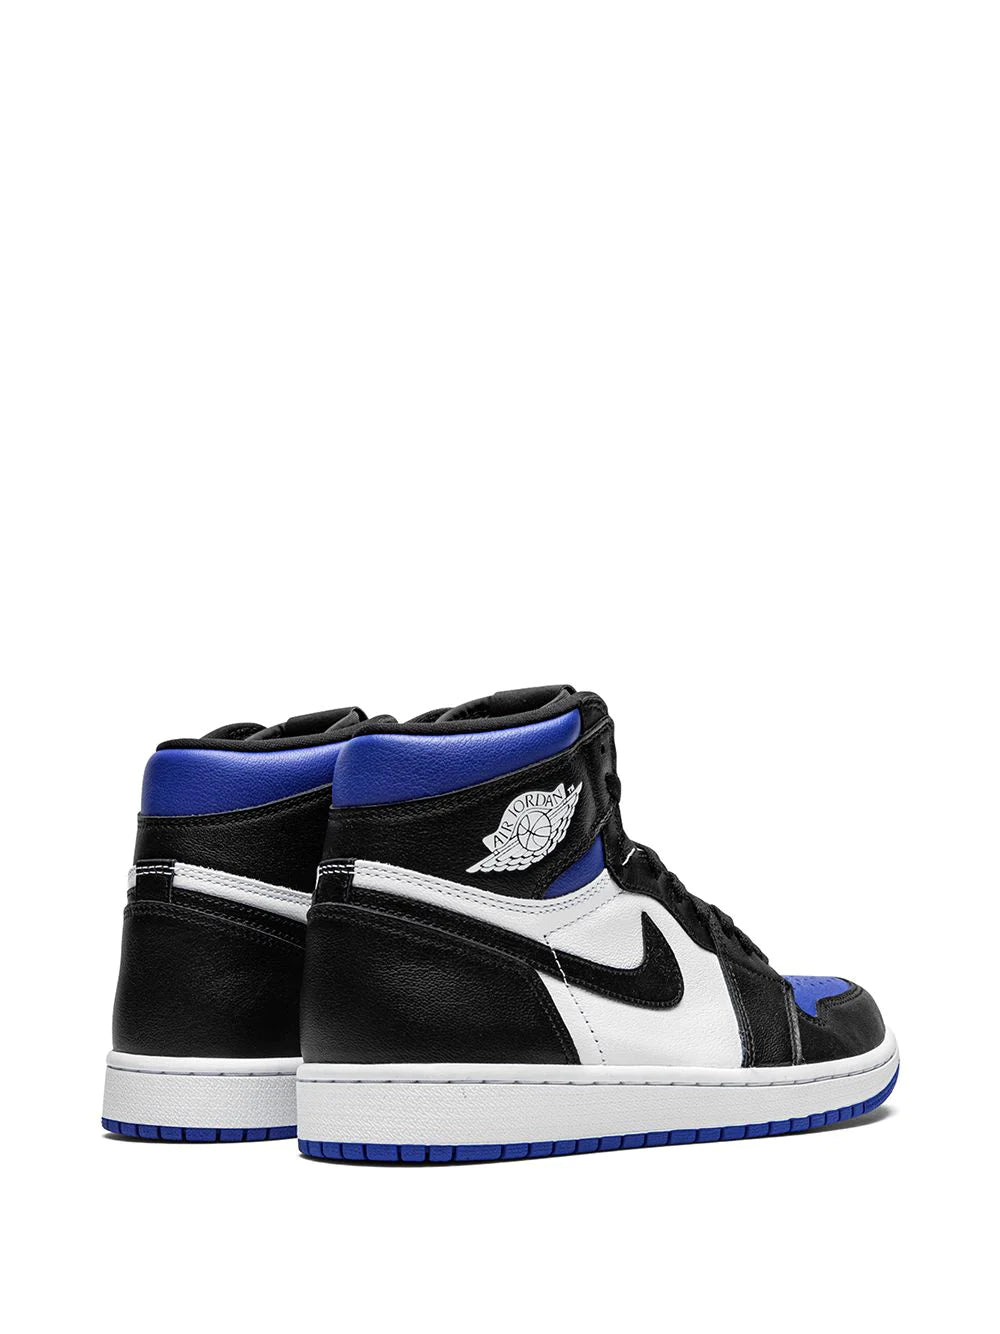 Nike Air Jordan 1 Retro High OG "Royal Toe" Sneakers